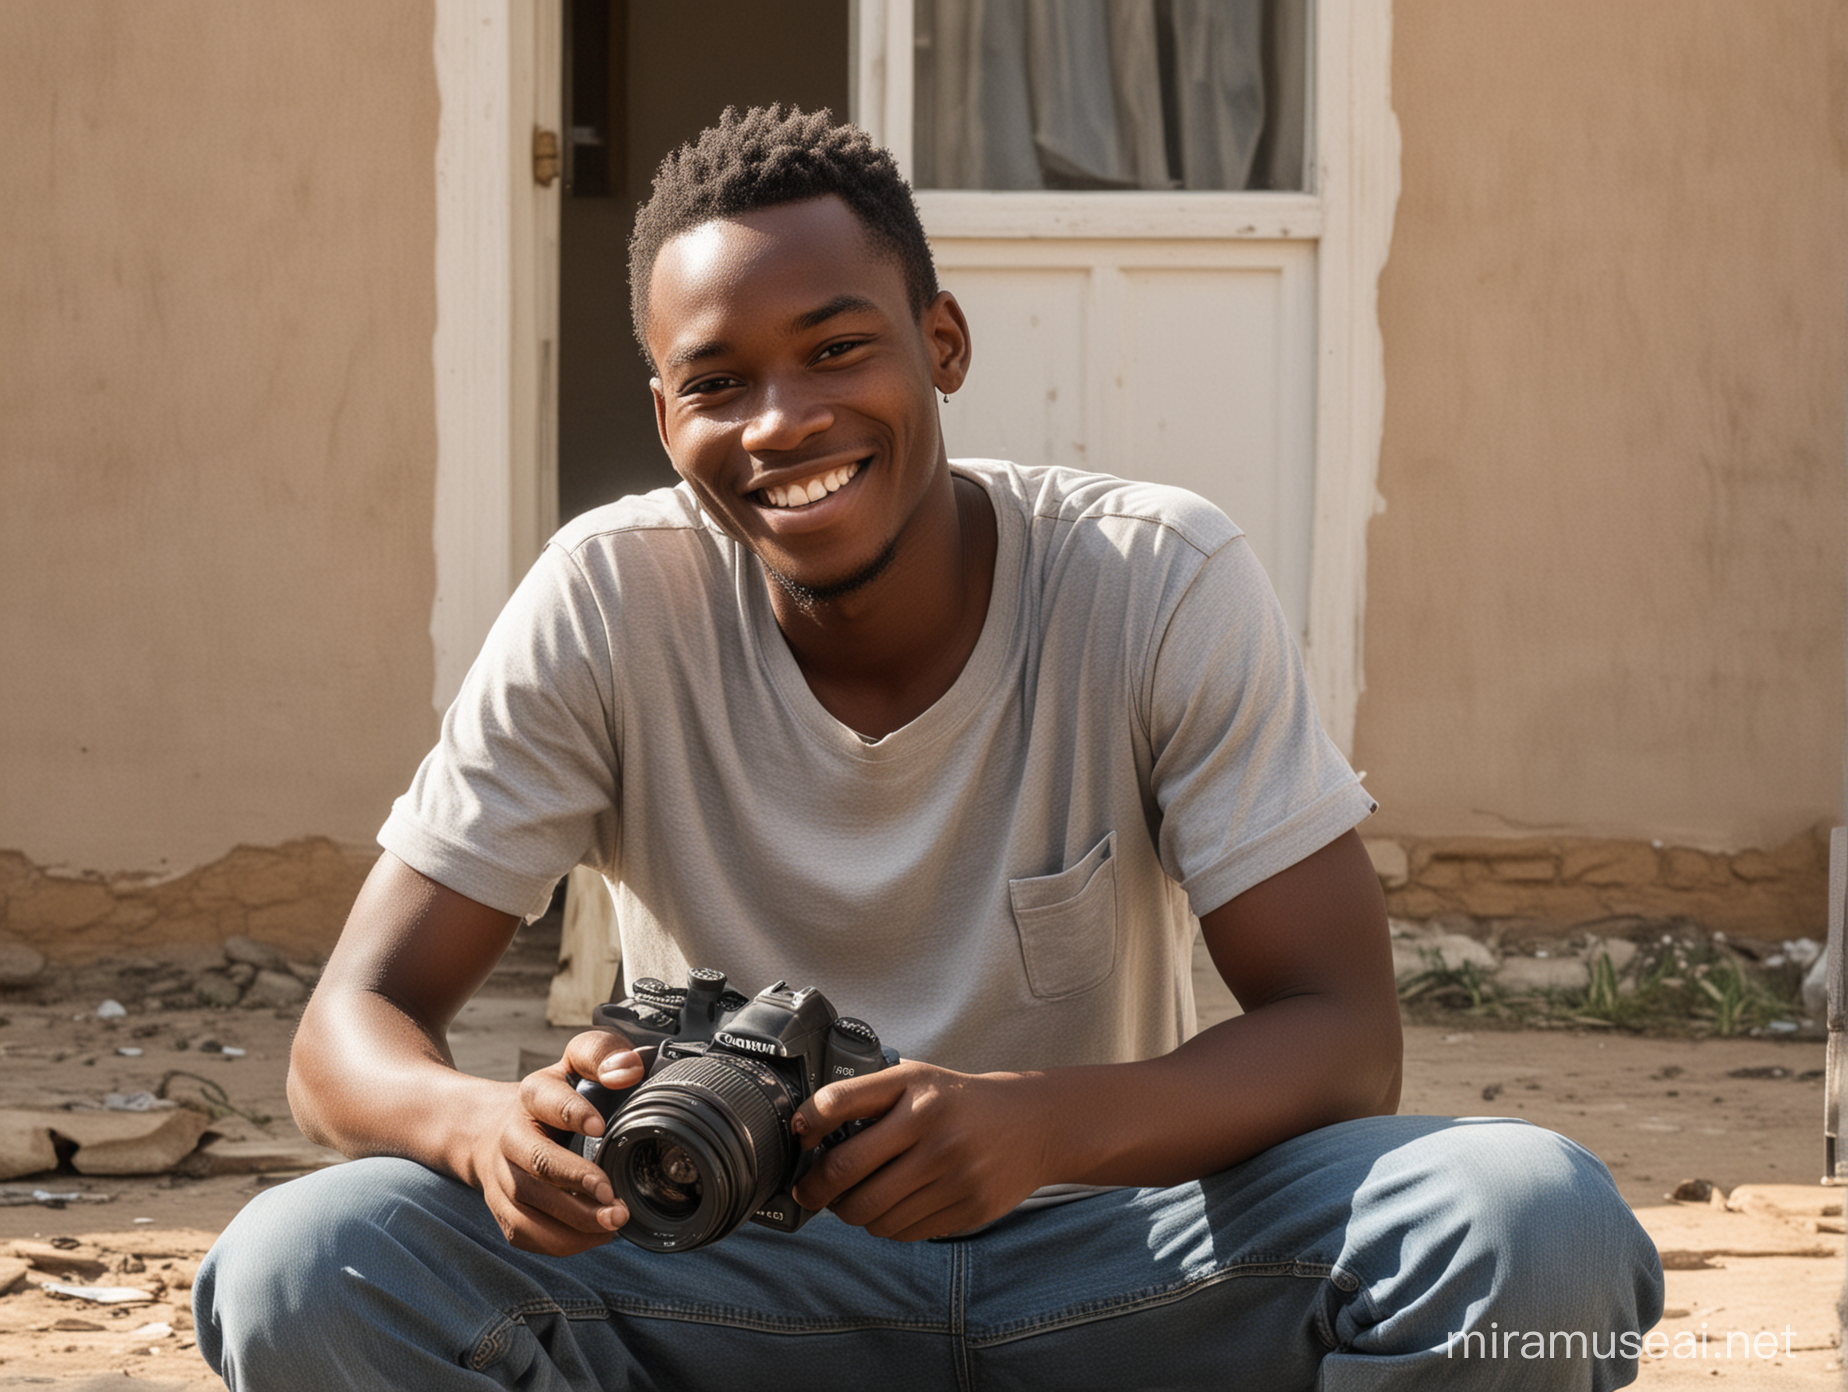 Un jeune africain, nettoyant son appareil phot Canon 250D, tout souriant, assis devant sa maison